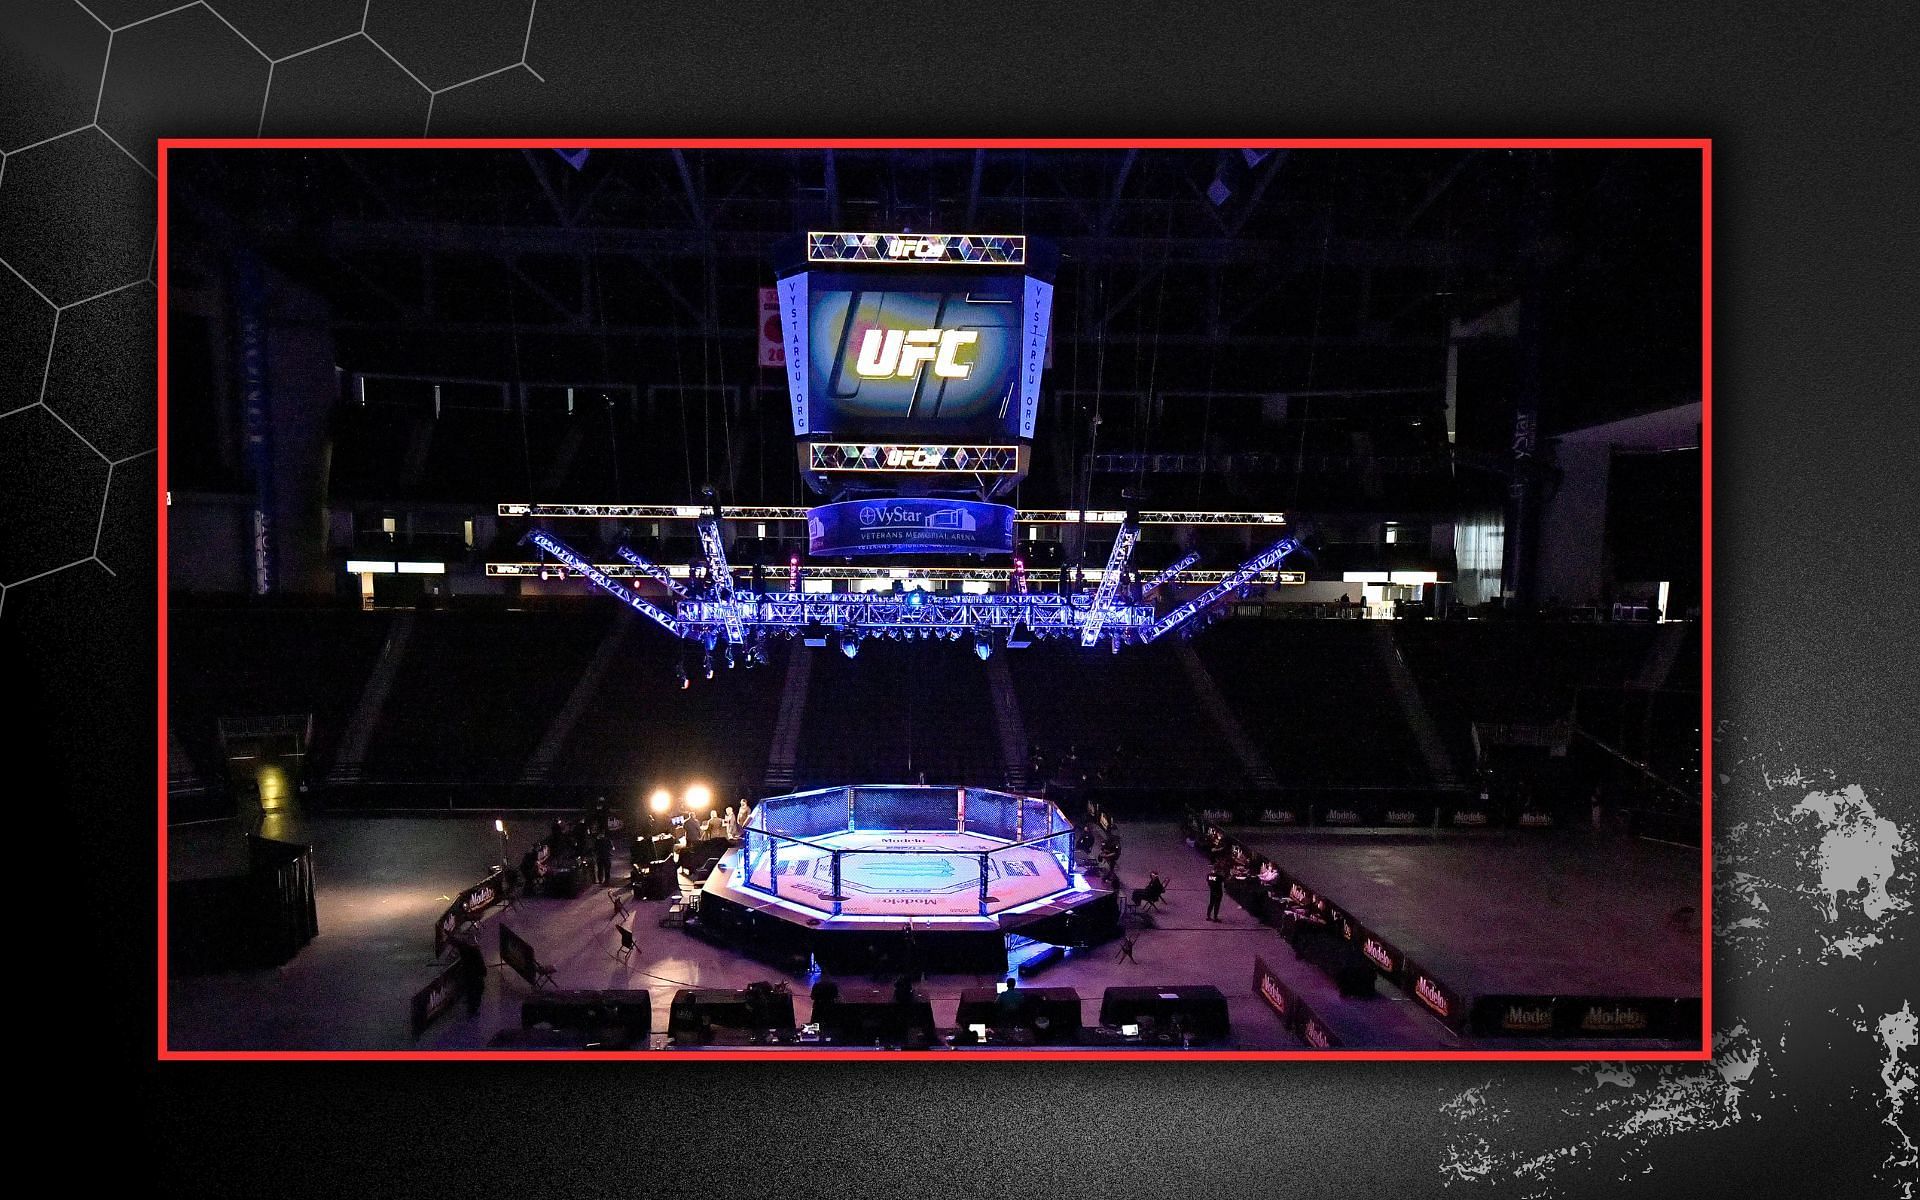 UFC planning event in Atlantic City